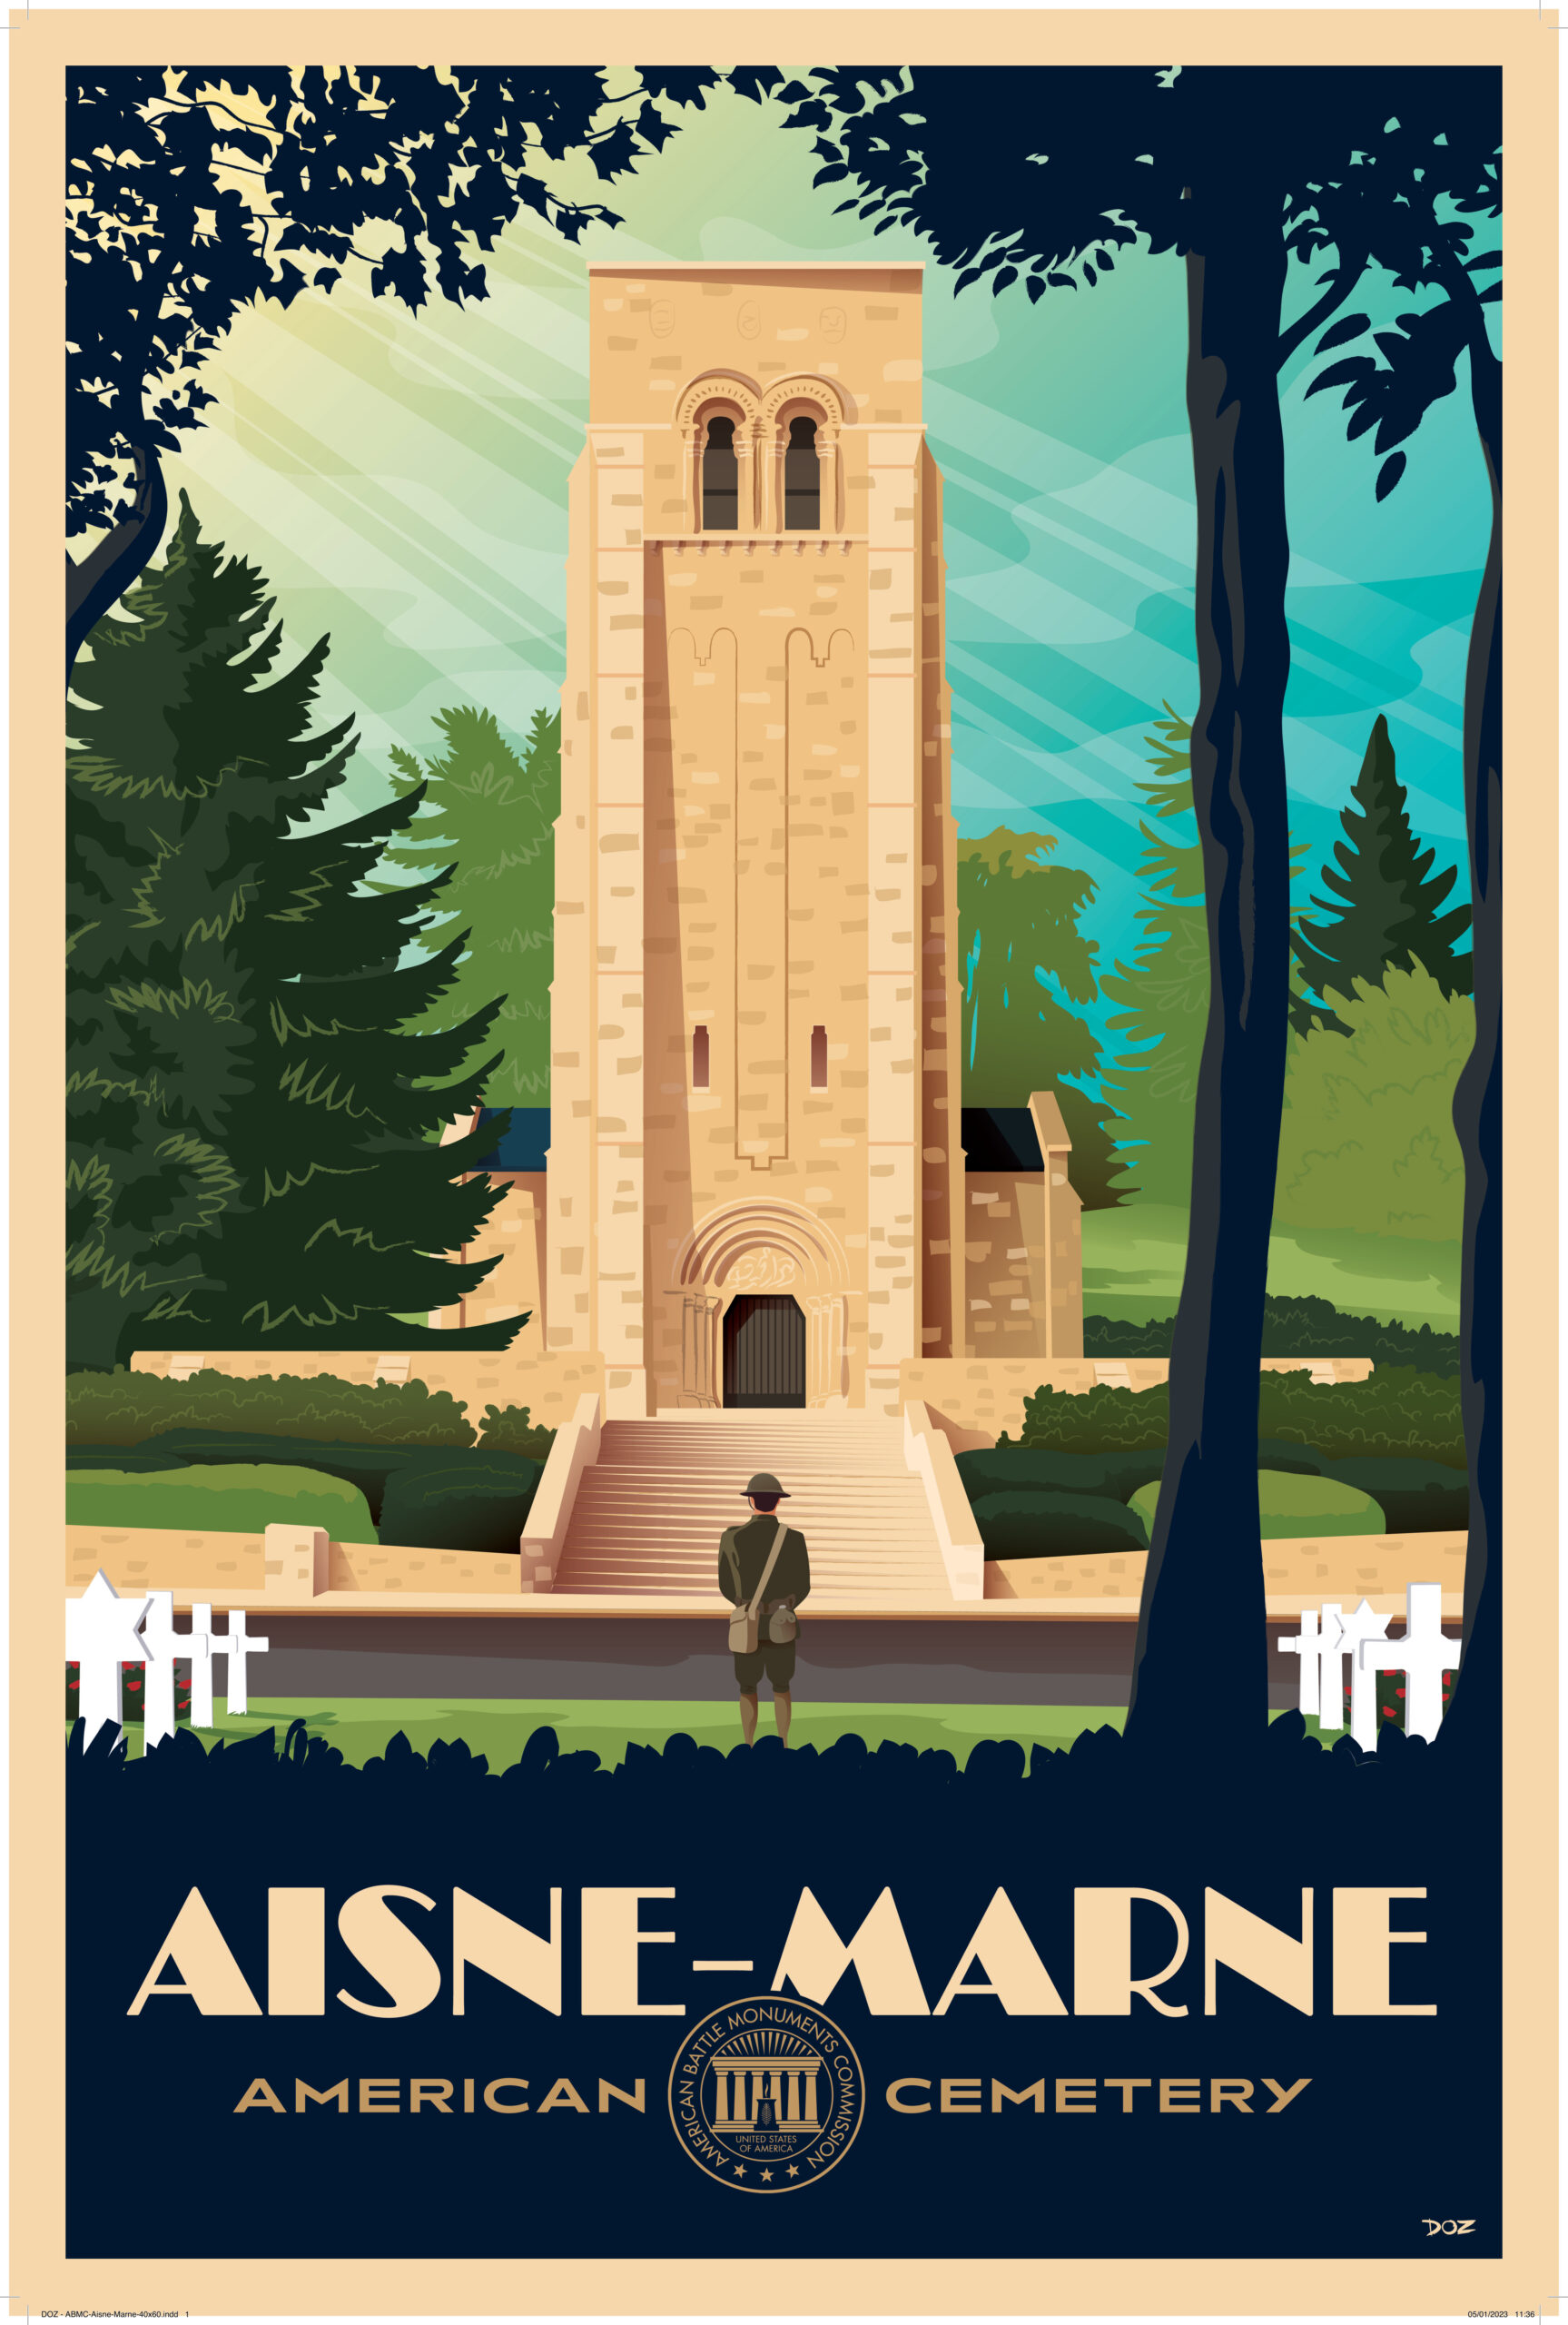 Aisne Marne